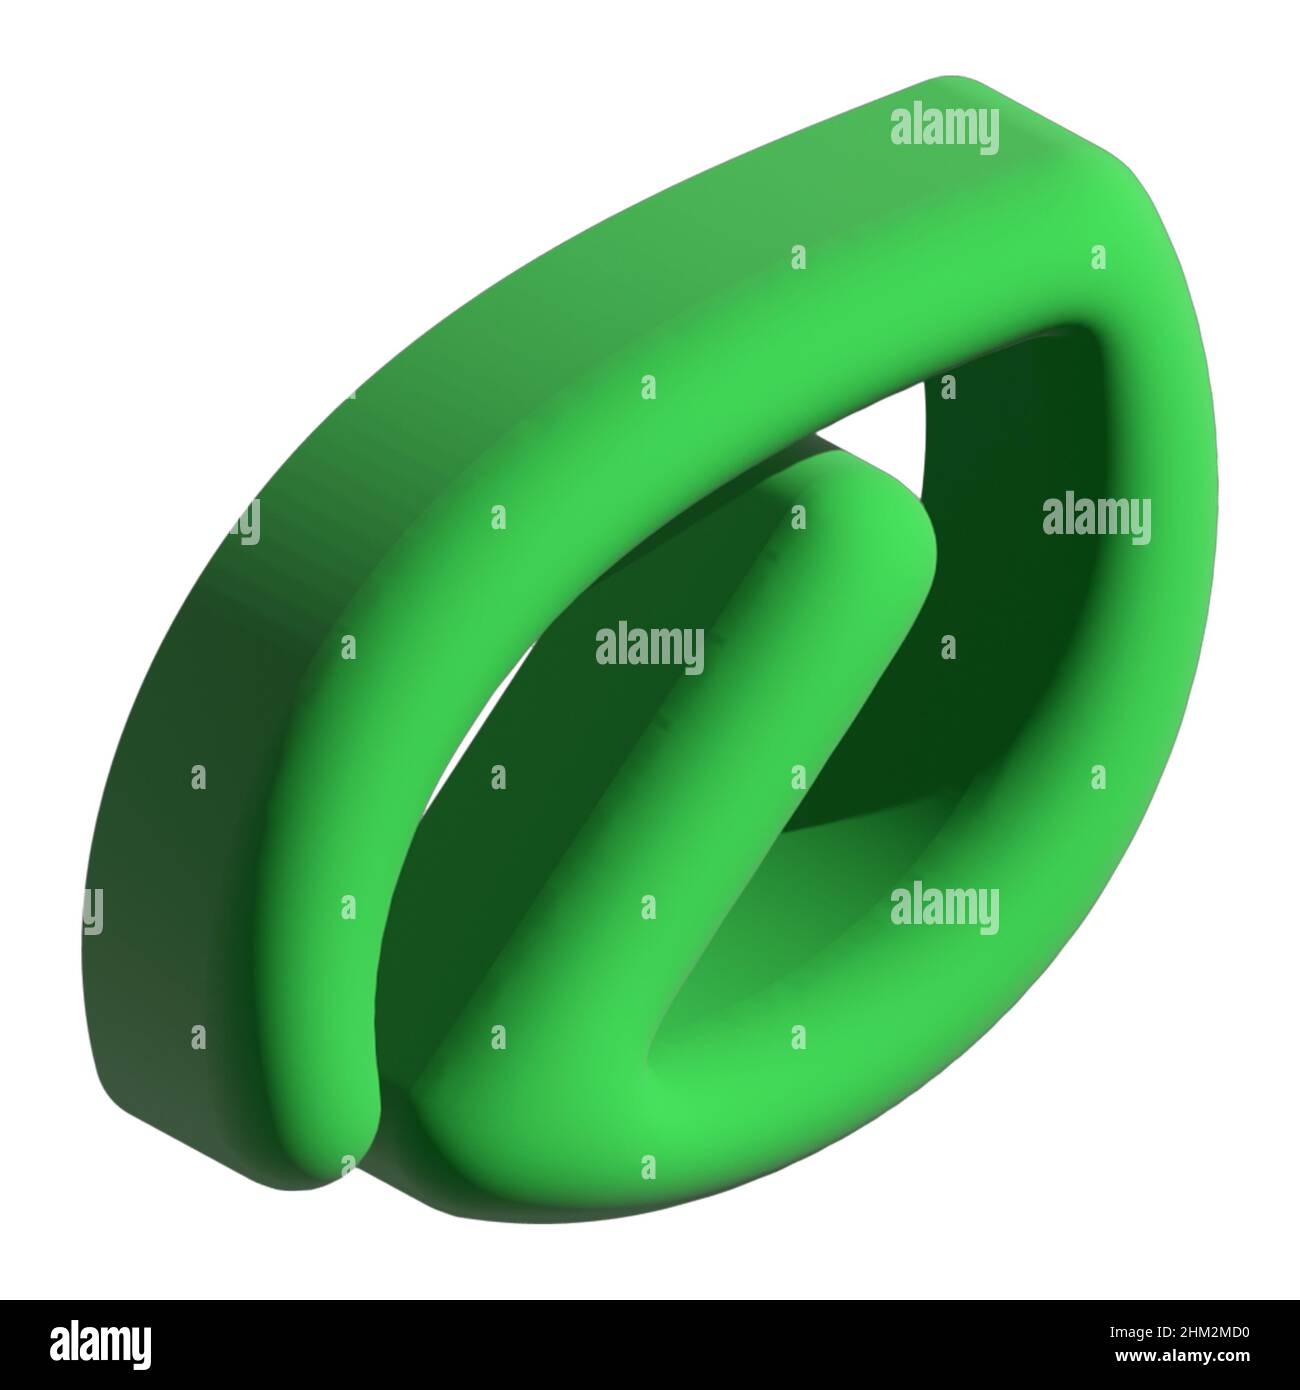 Foglia verde astratta in stile minimalista. 3D illustrazione. Isolare. Segnale. Icona. Immagine semplice per il design e i social network. Foto Stock